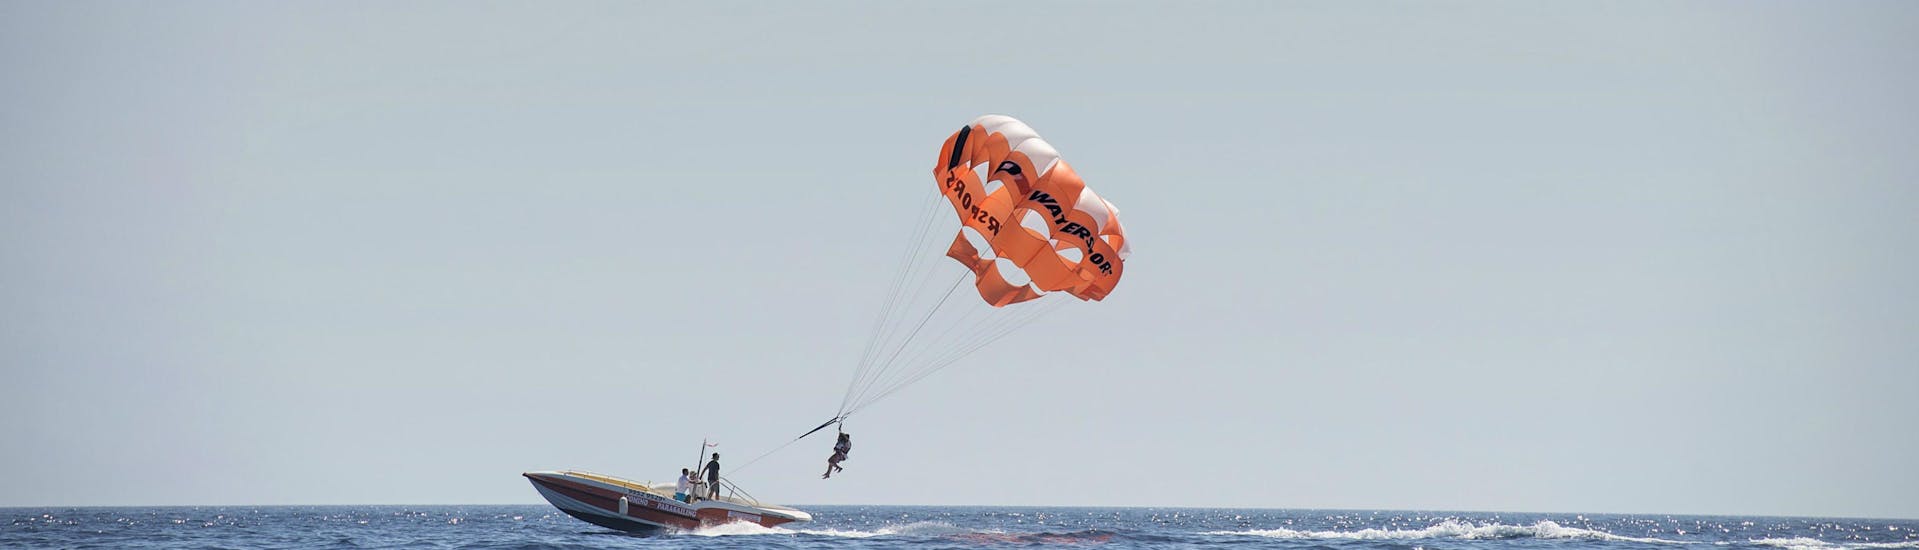 Paracadute ascensionale all'isola di Comino.